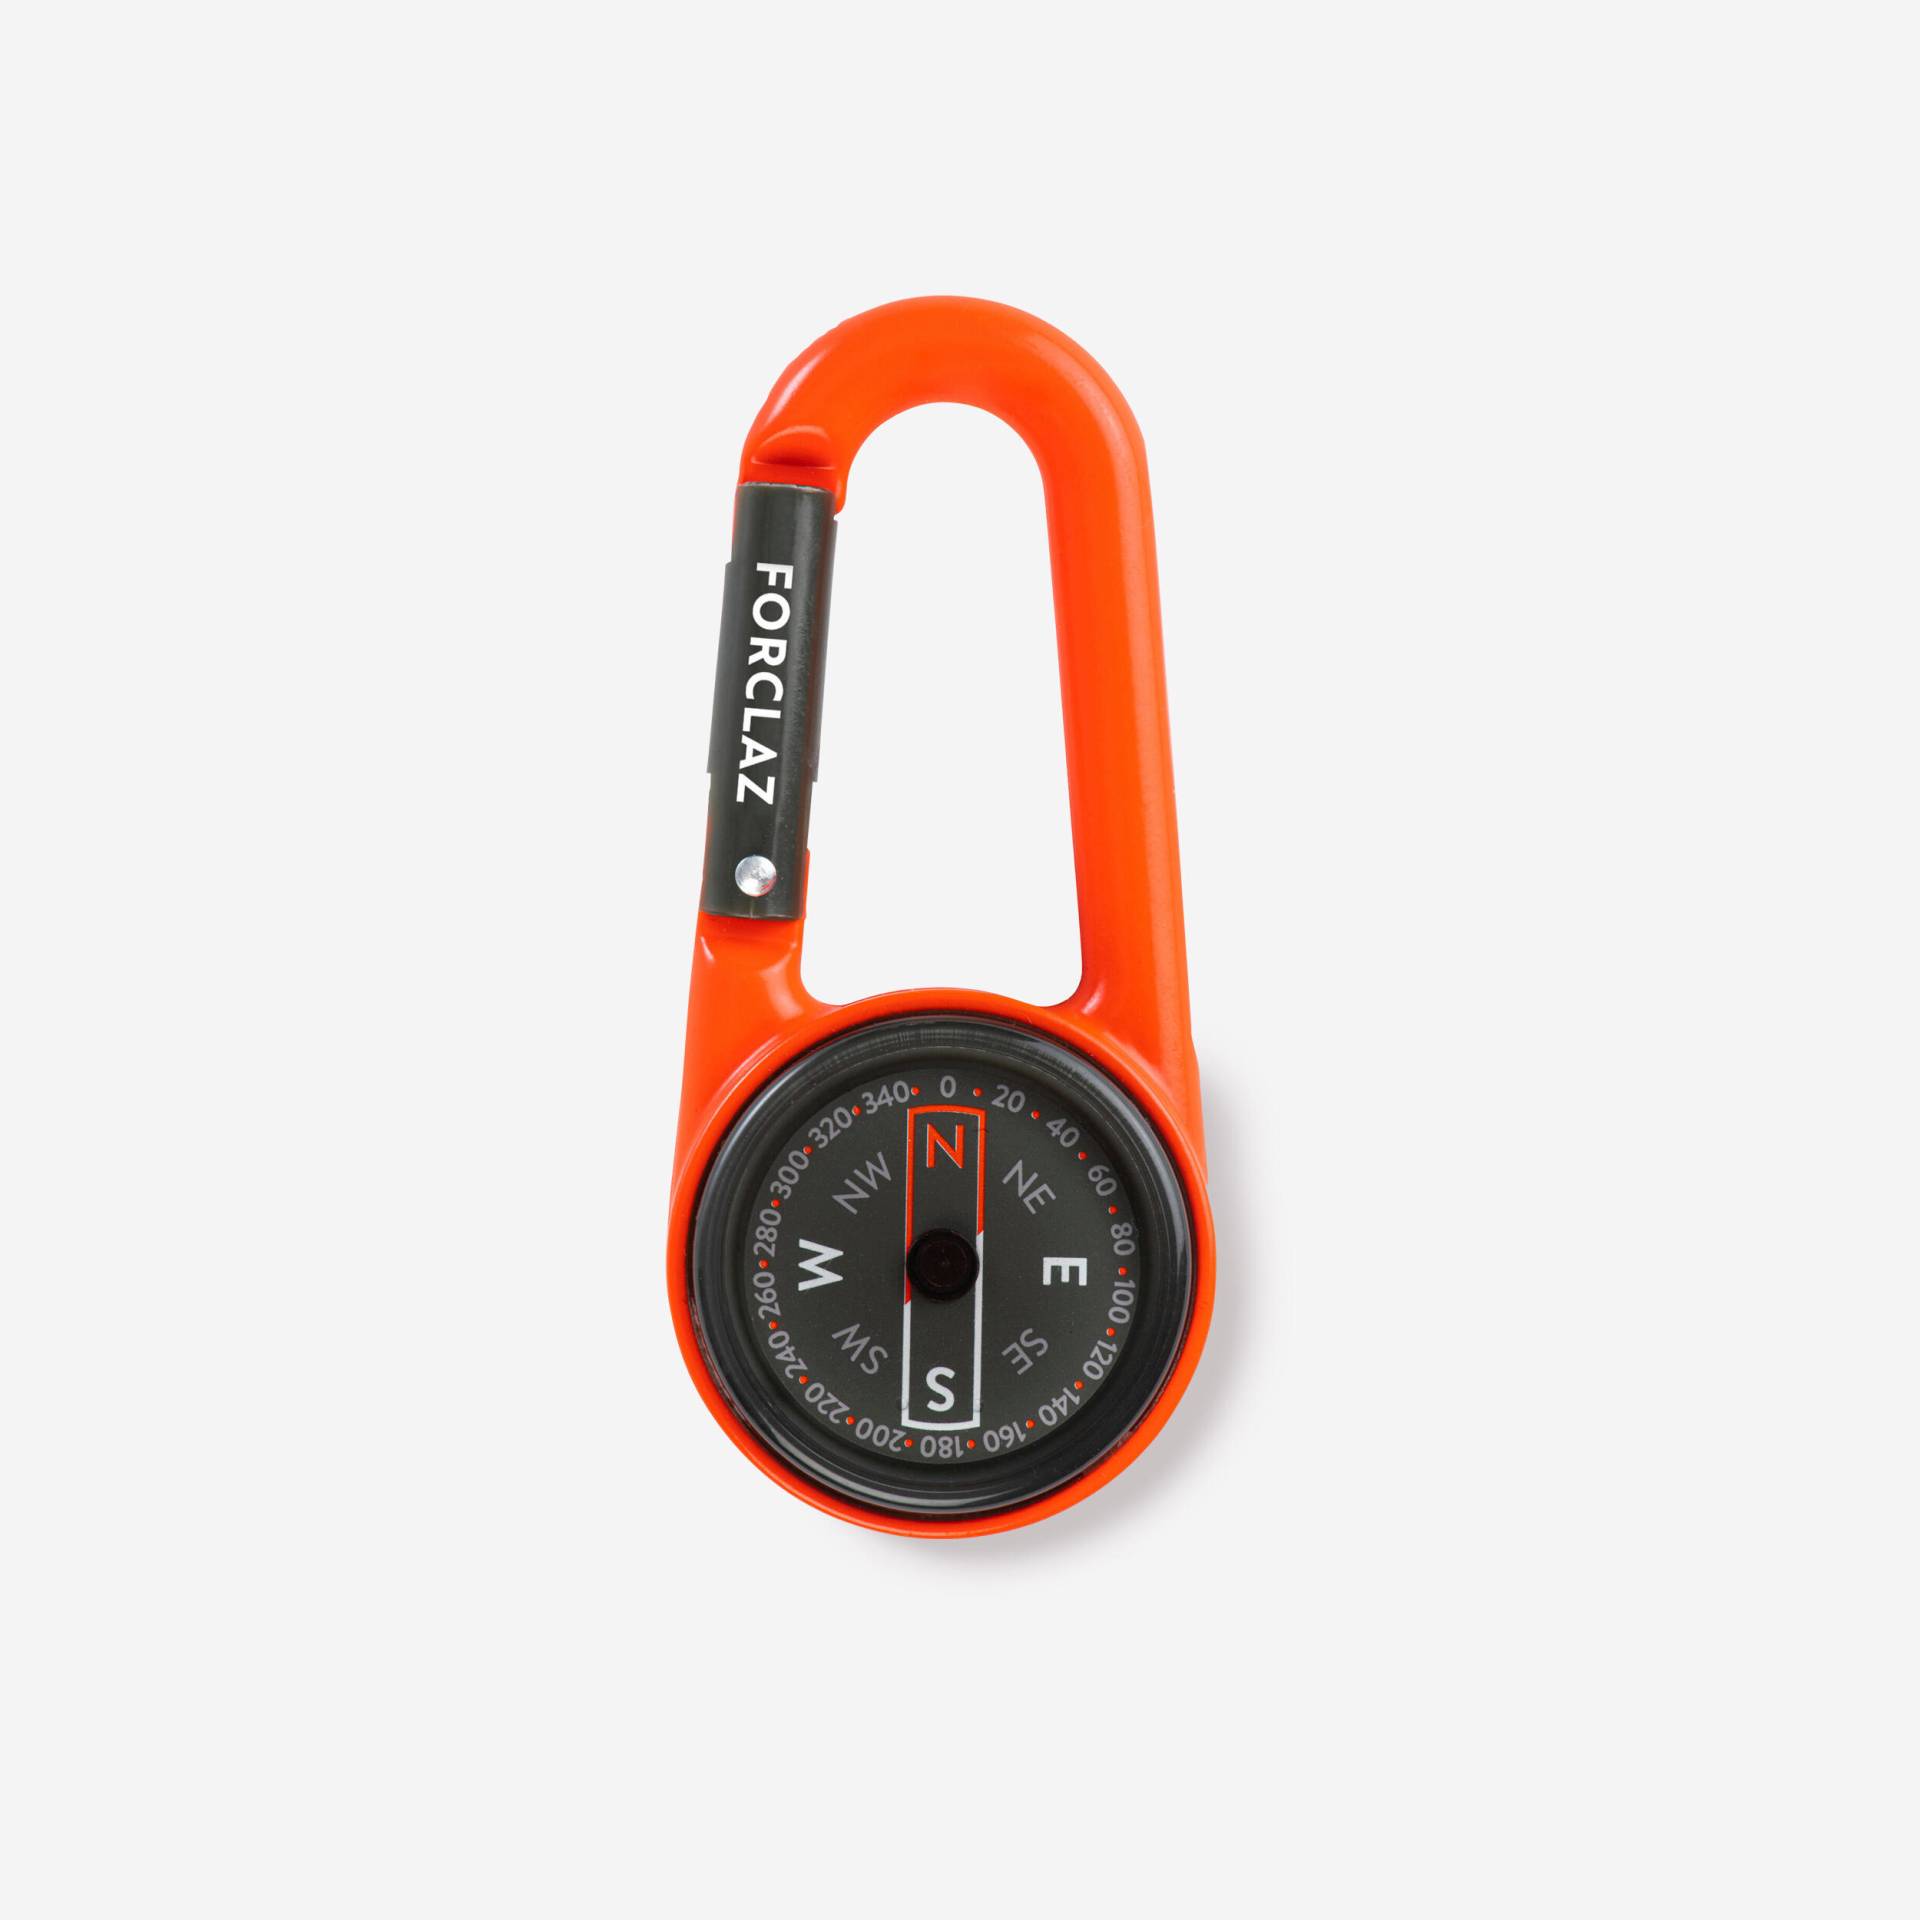 Kompass Kompakt 50 Karabiner orange von Decathlon